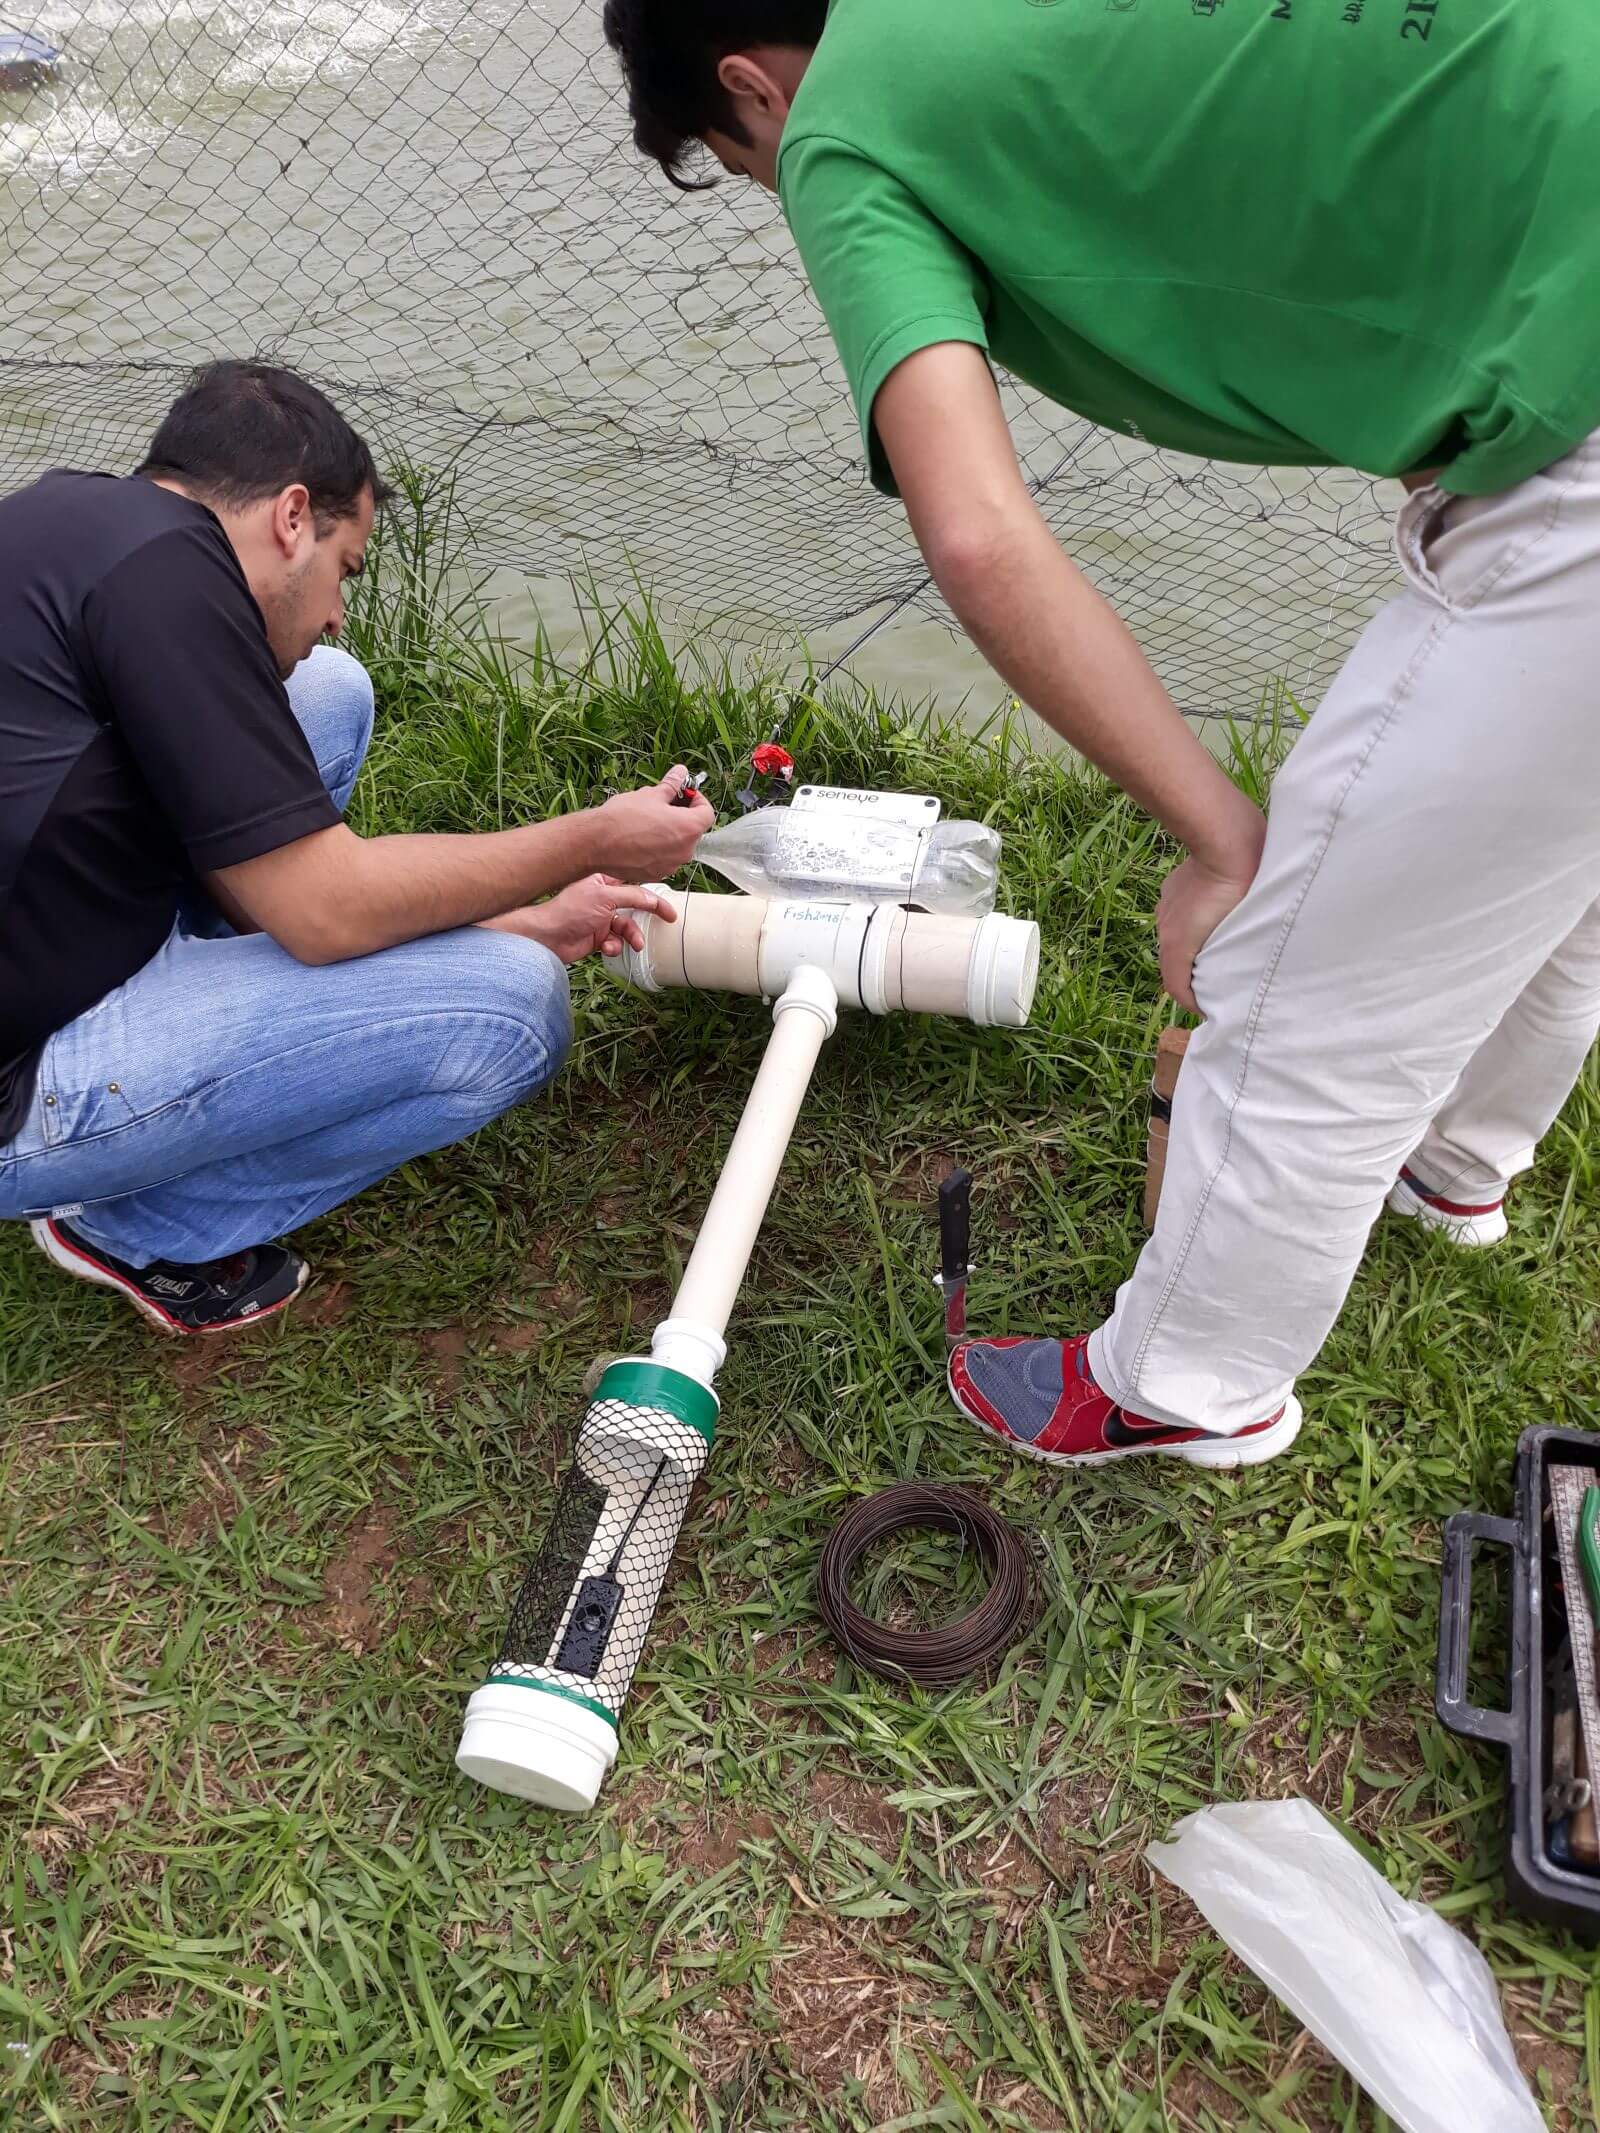 Seneye node monitoring critical parameters in Brazilian Fish Farm